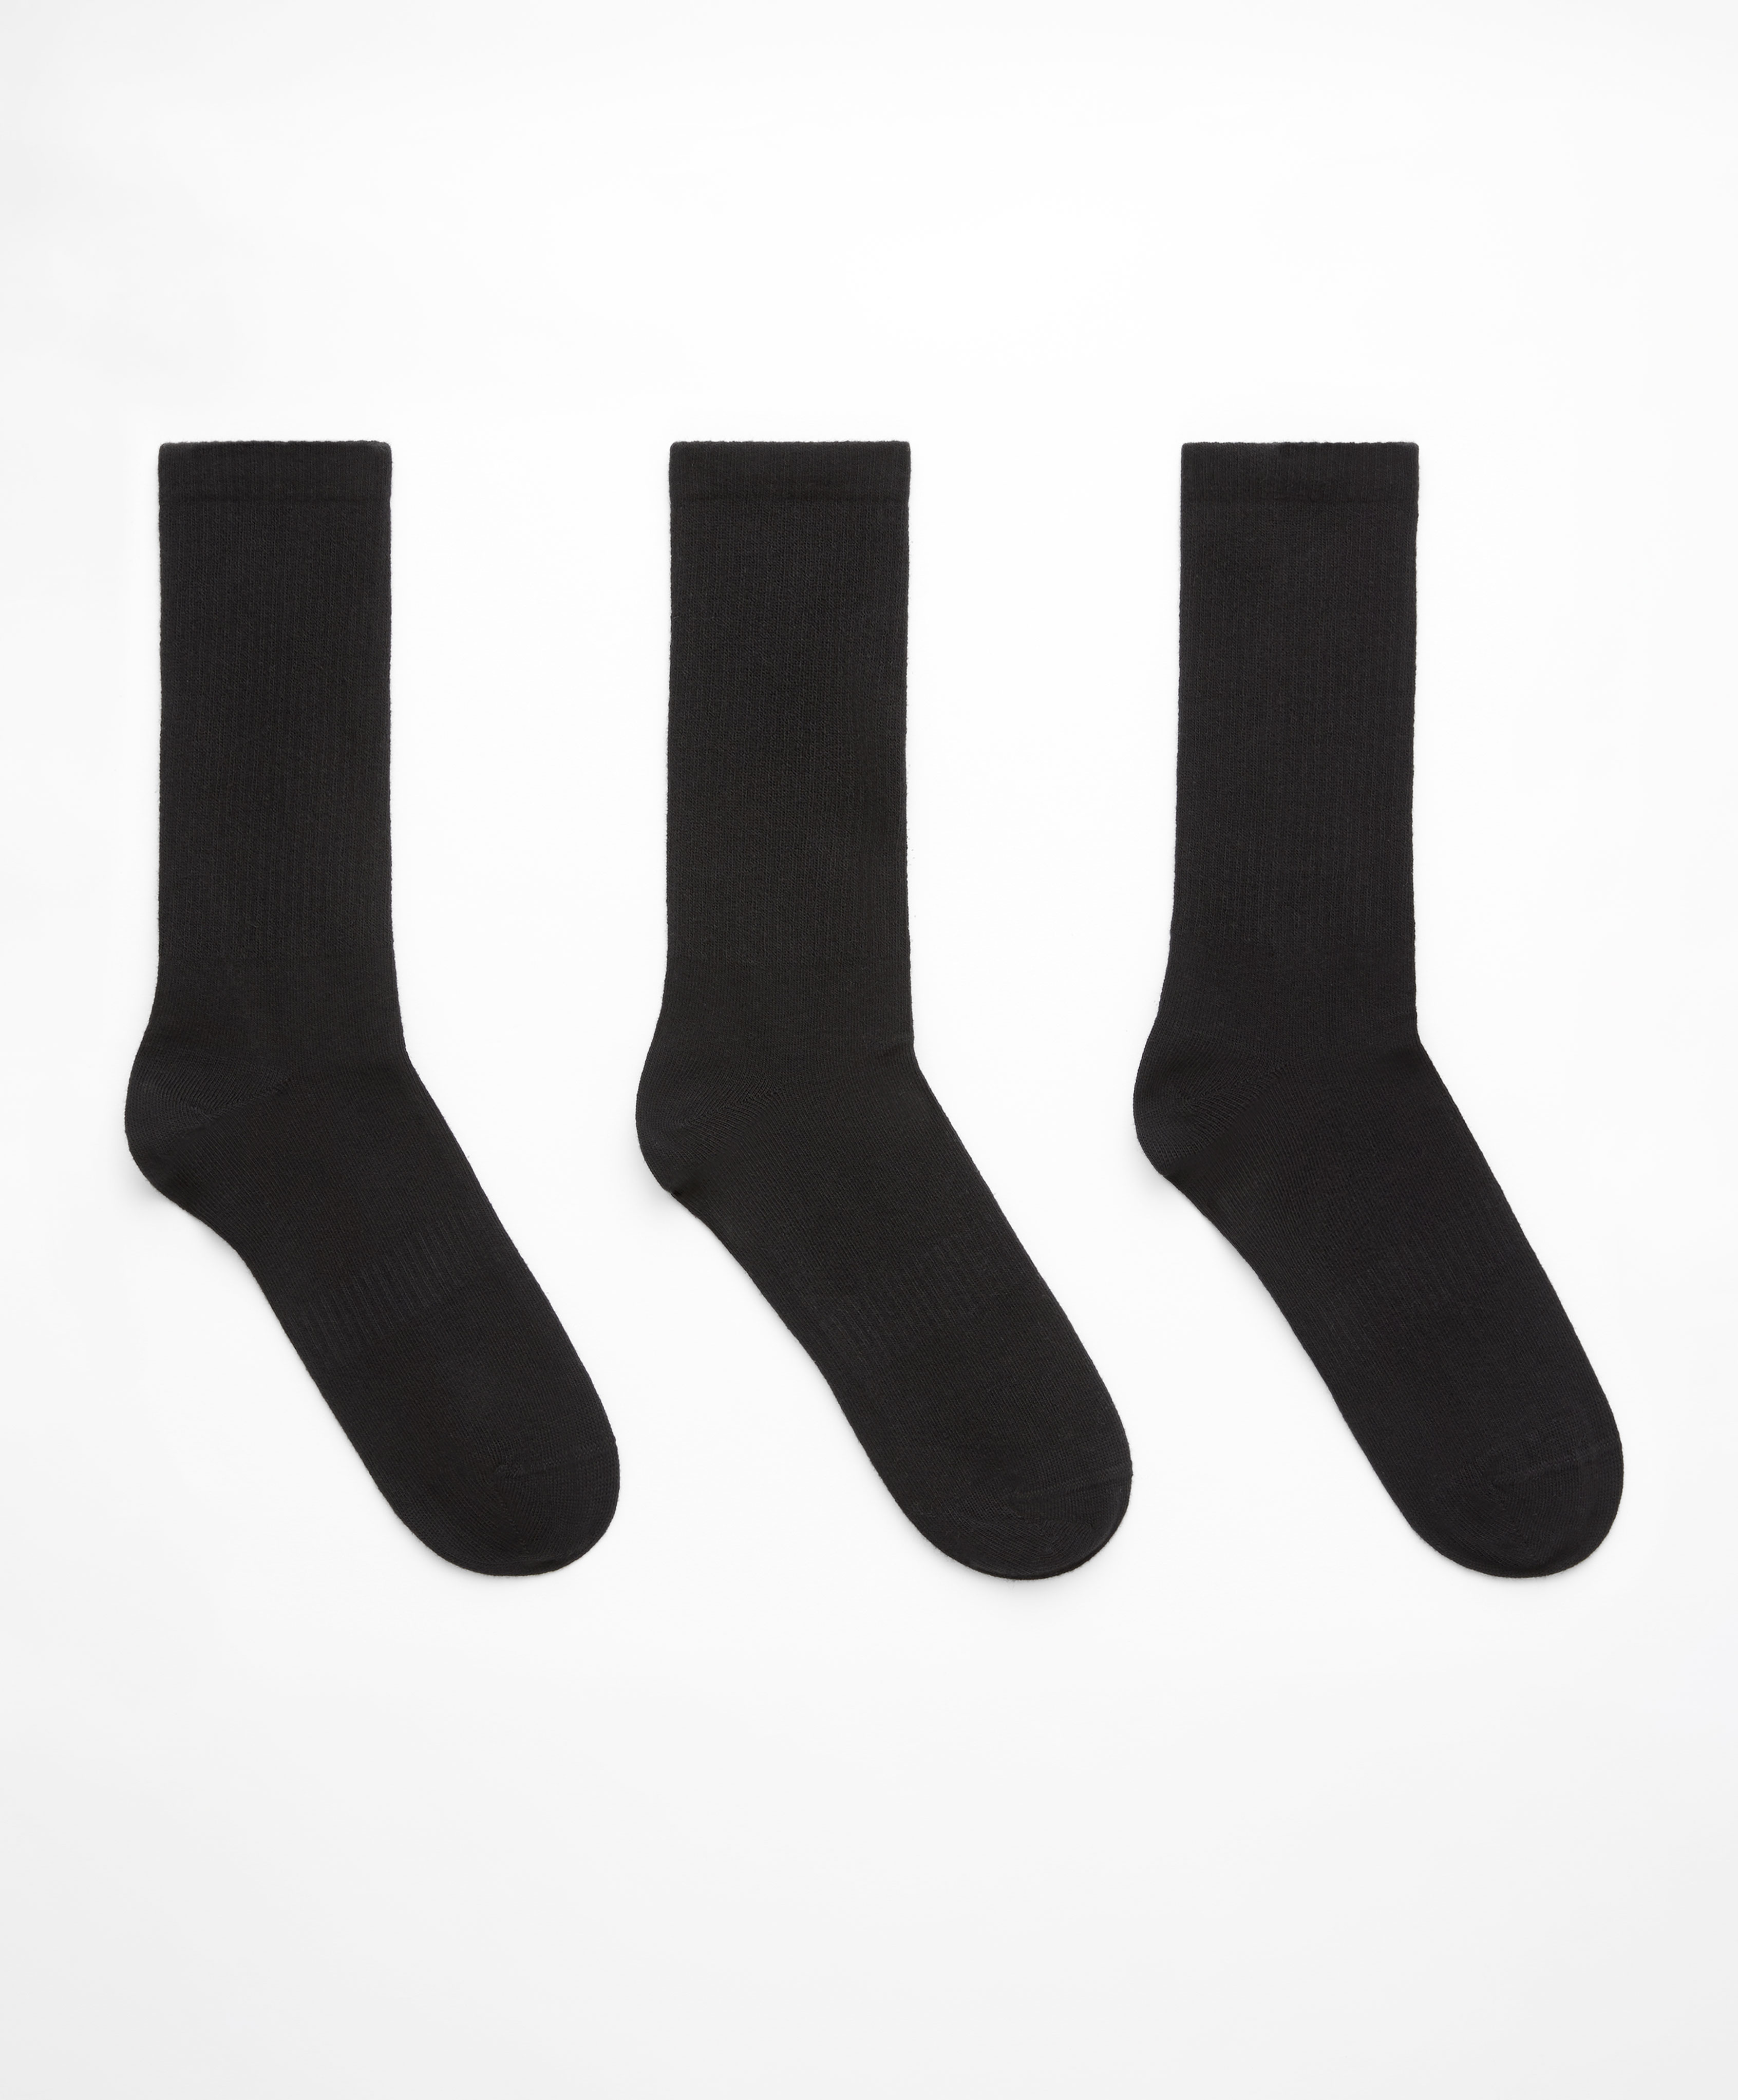 3 ζεύγη αθλητικές βαμβακερές κάλτσες classic